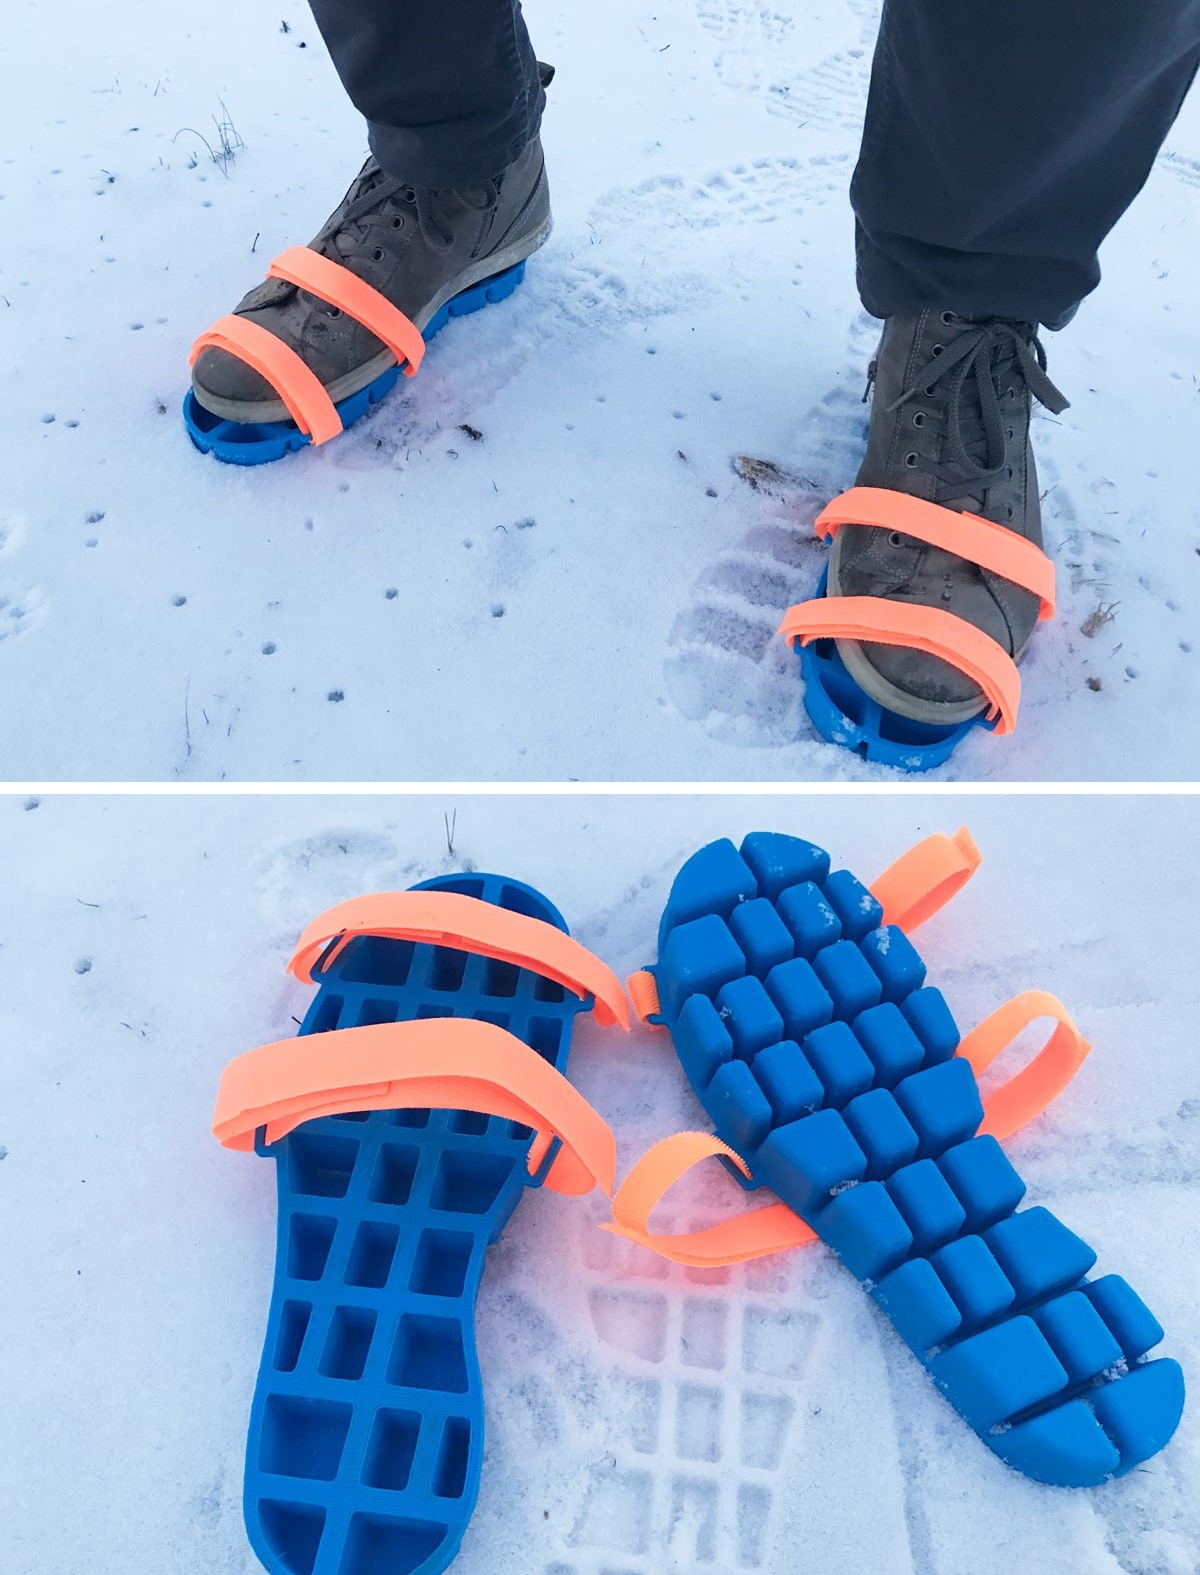 حذاء للسير على الثلج، بالإضافة لكونه معداً كي يُستخدم كقالب ثلج. صورة: Dominic Wilcox